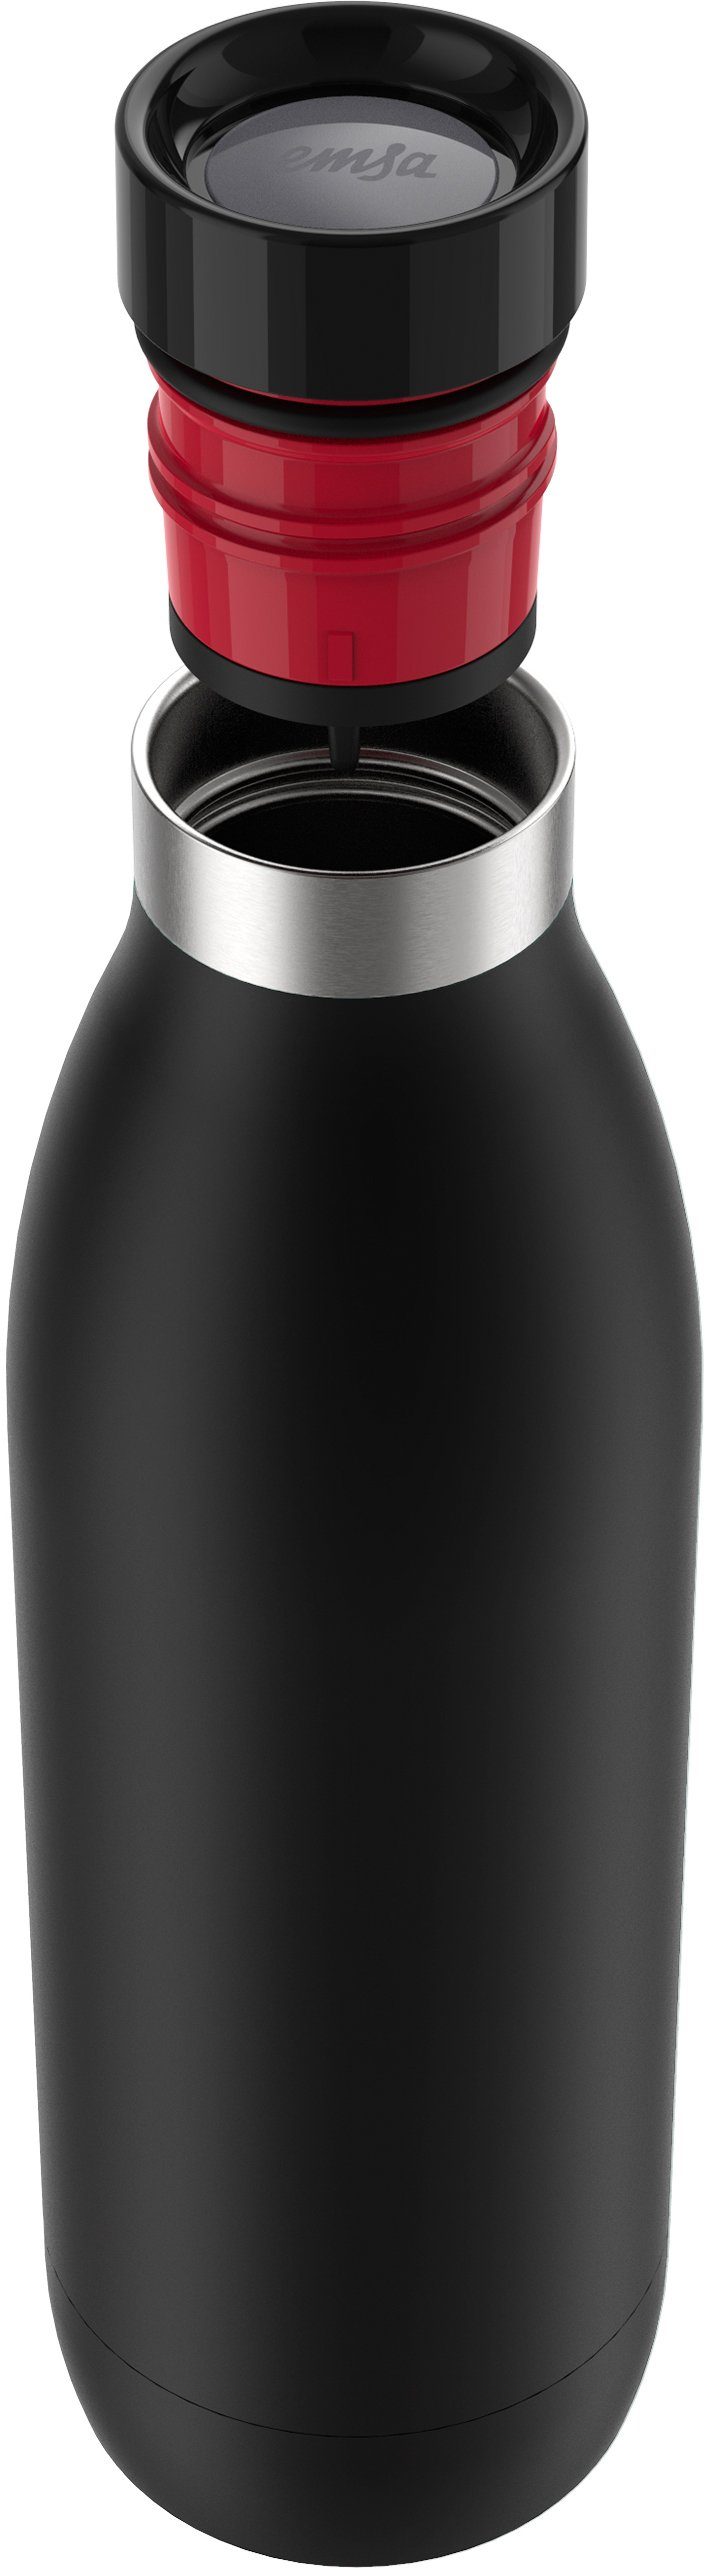 schwarz Color, Deckel, kühl, warm/24h Edelstahl, Emsa spülmaschinenfest 12h Quick-Press Bludrop Trinkflasche